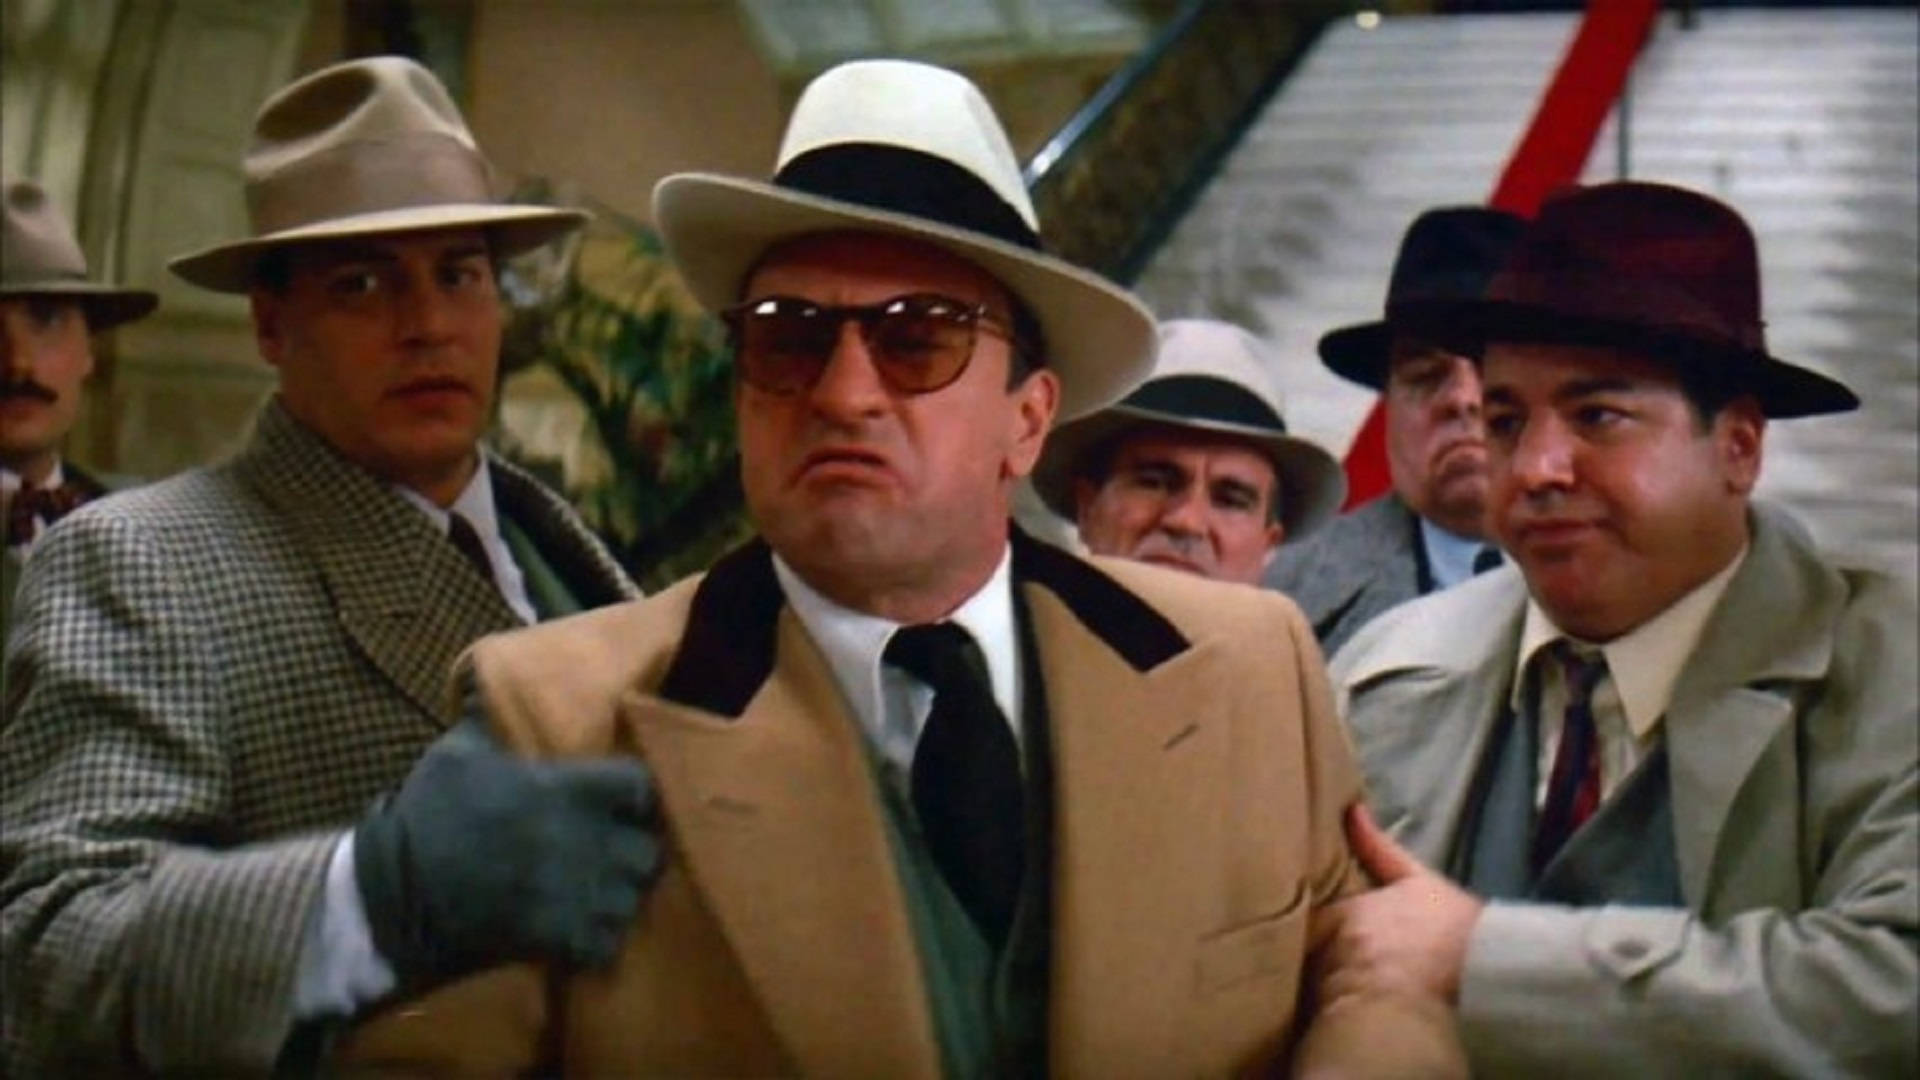 Al Capone With The Mafia Gang